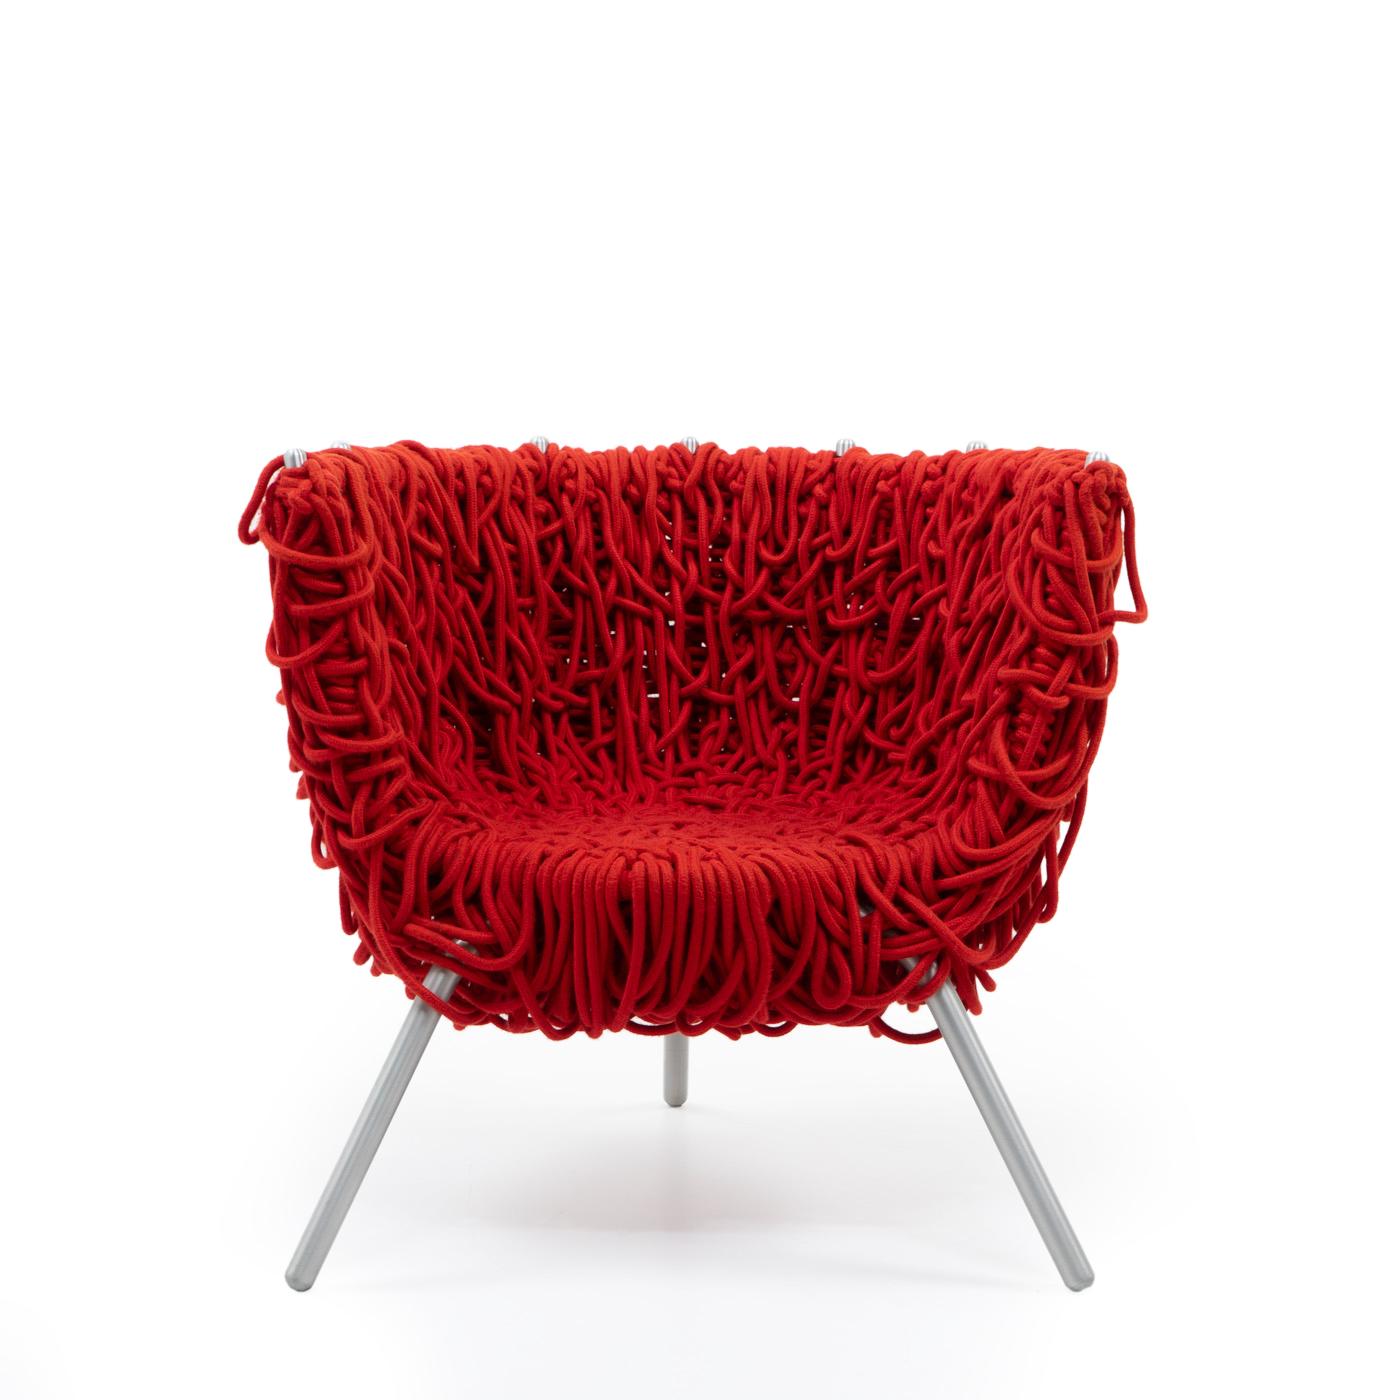 La chaise Vermelha, créée par les frères Campana, se distingue par son design contemporain. 

Inspirée de la culture brésilienne, la chaise présente un design unique et complexe, incarnant le style avant-gardiste des frères Campana. Sa couleur rouge